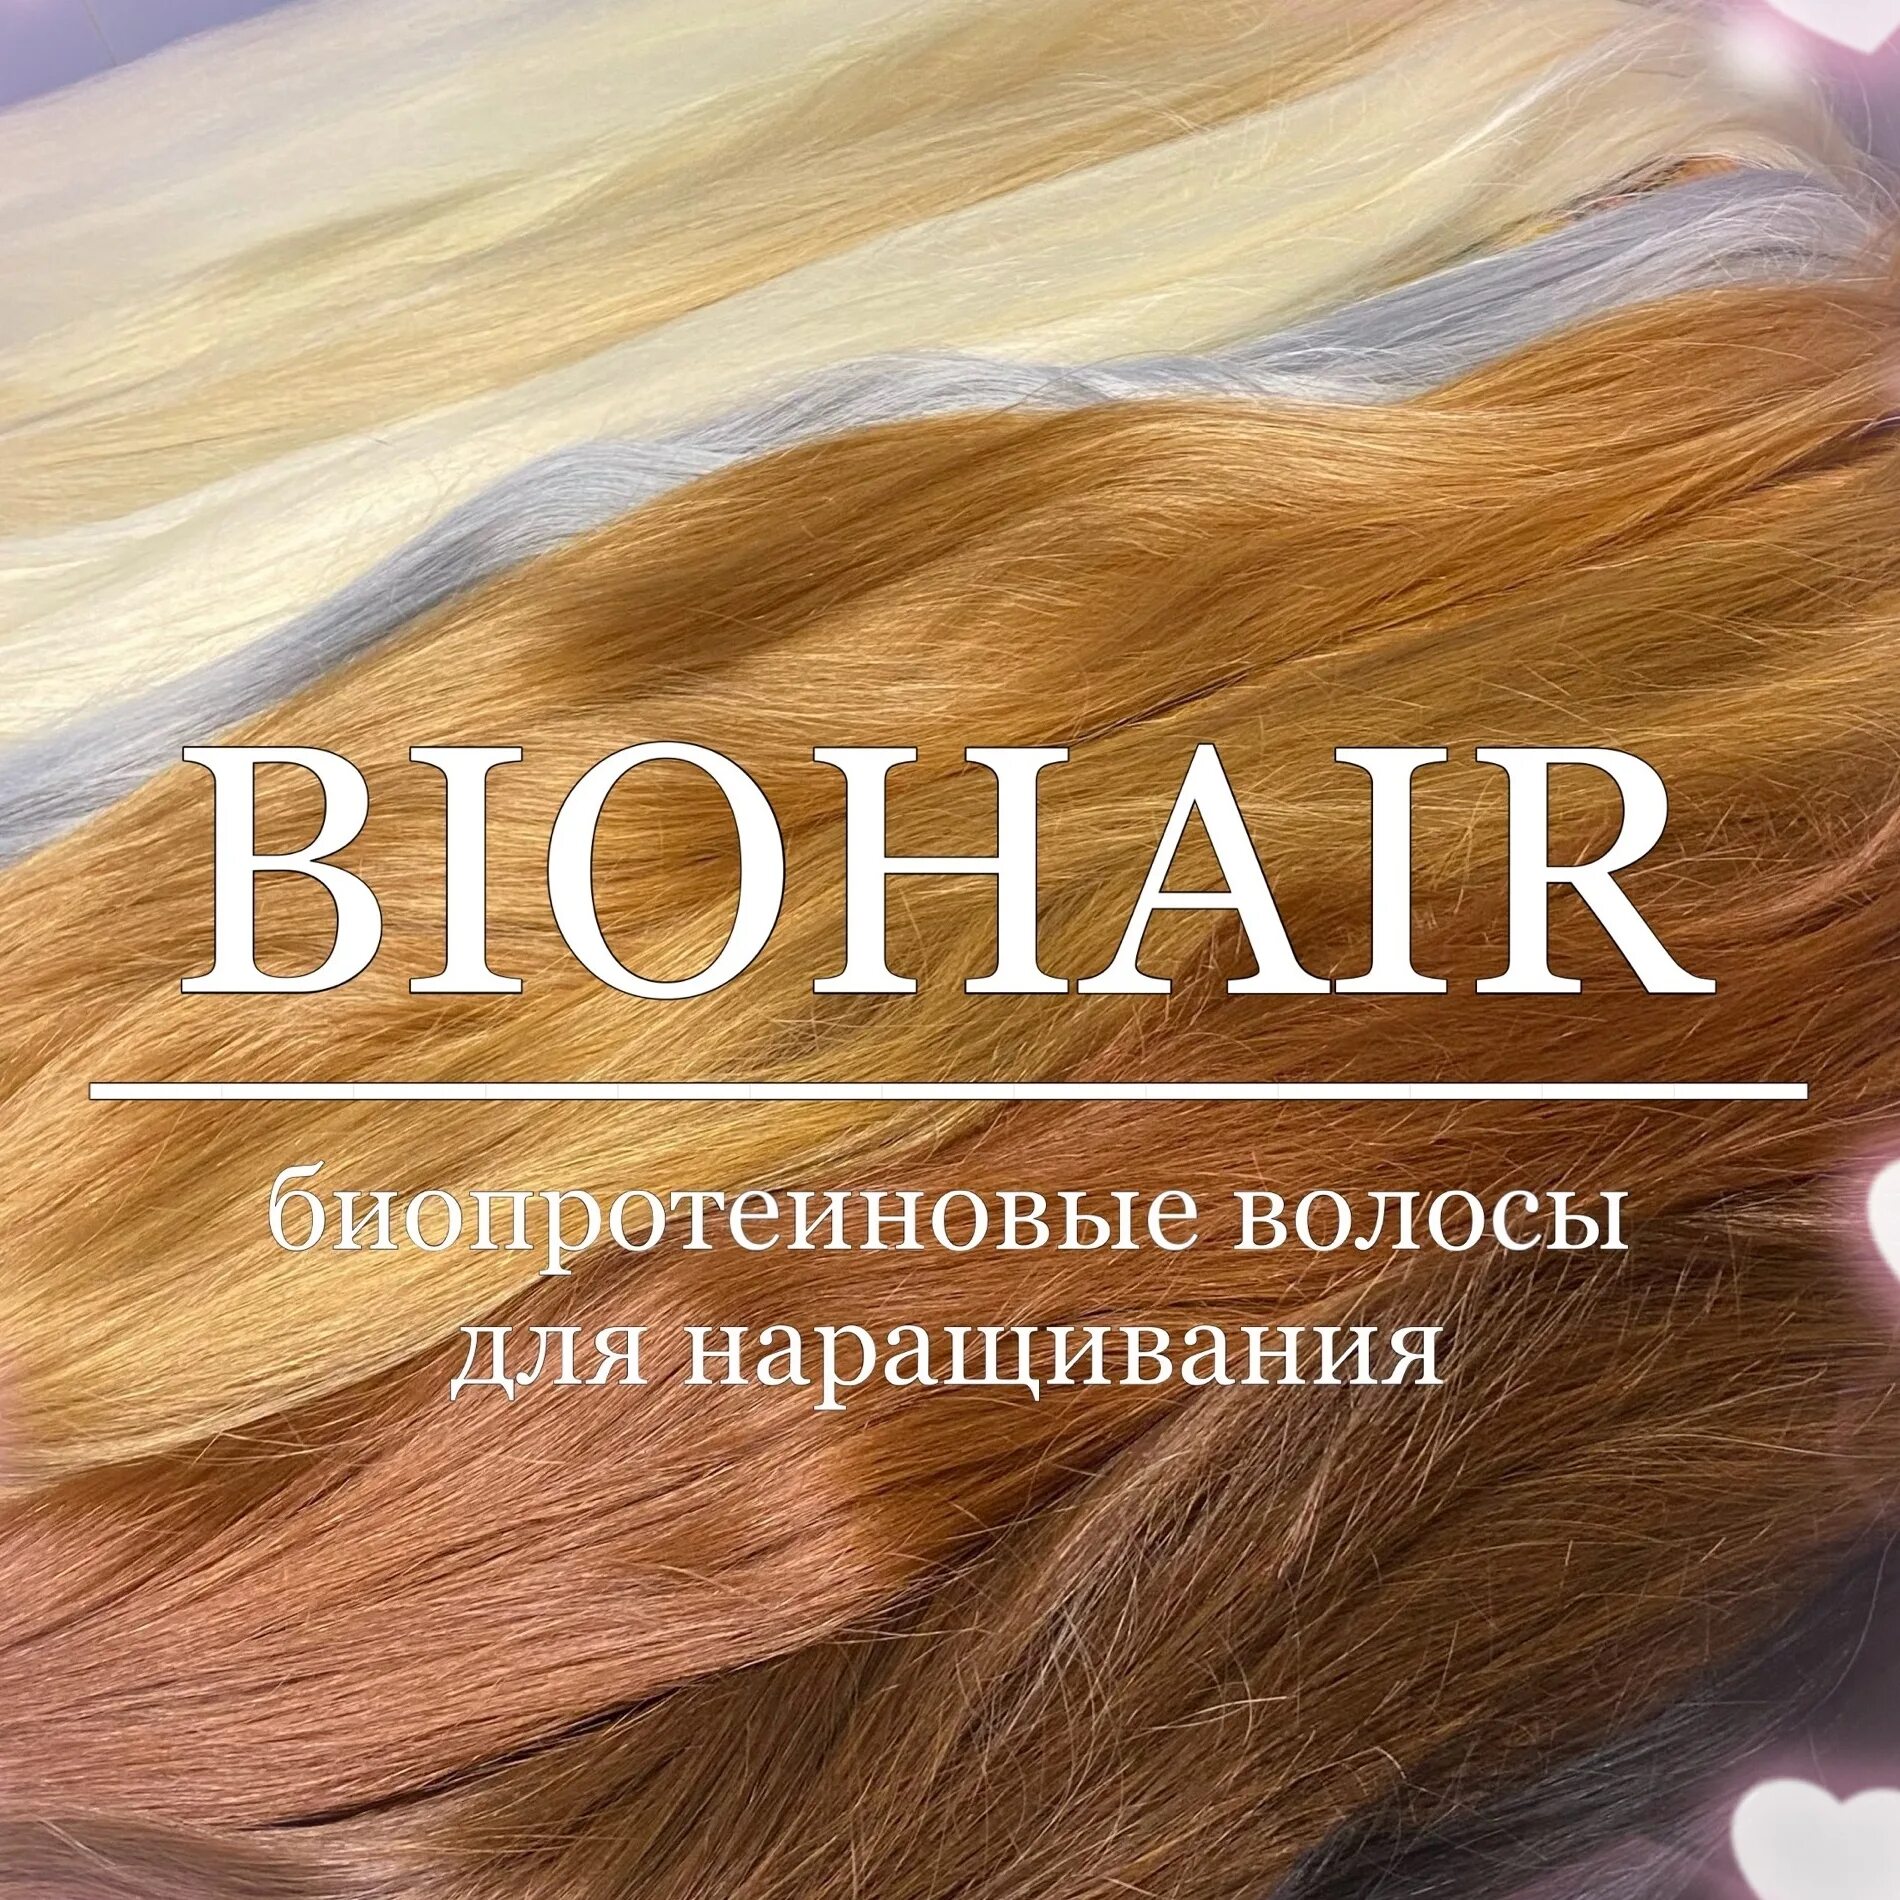 Наращивание биопротеиновые. Биопротеиновые волосы. Биопротеиновые волосы наращивание. Наращивание волос биопротеиновые волосы.